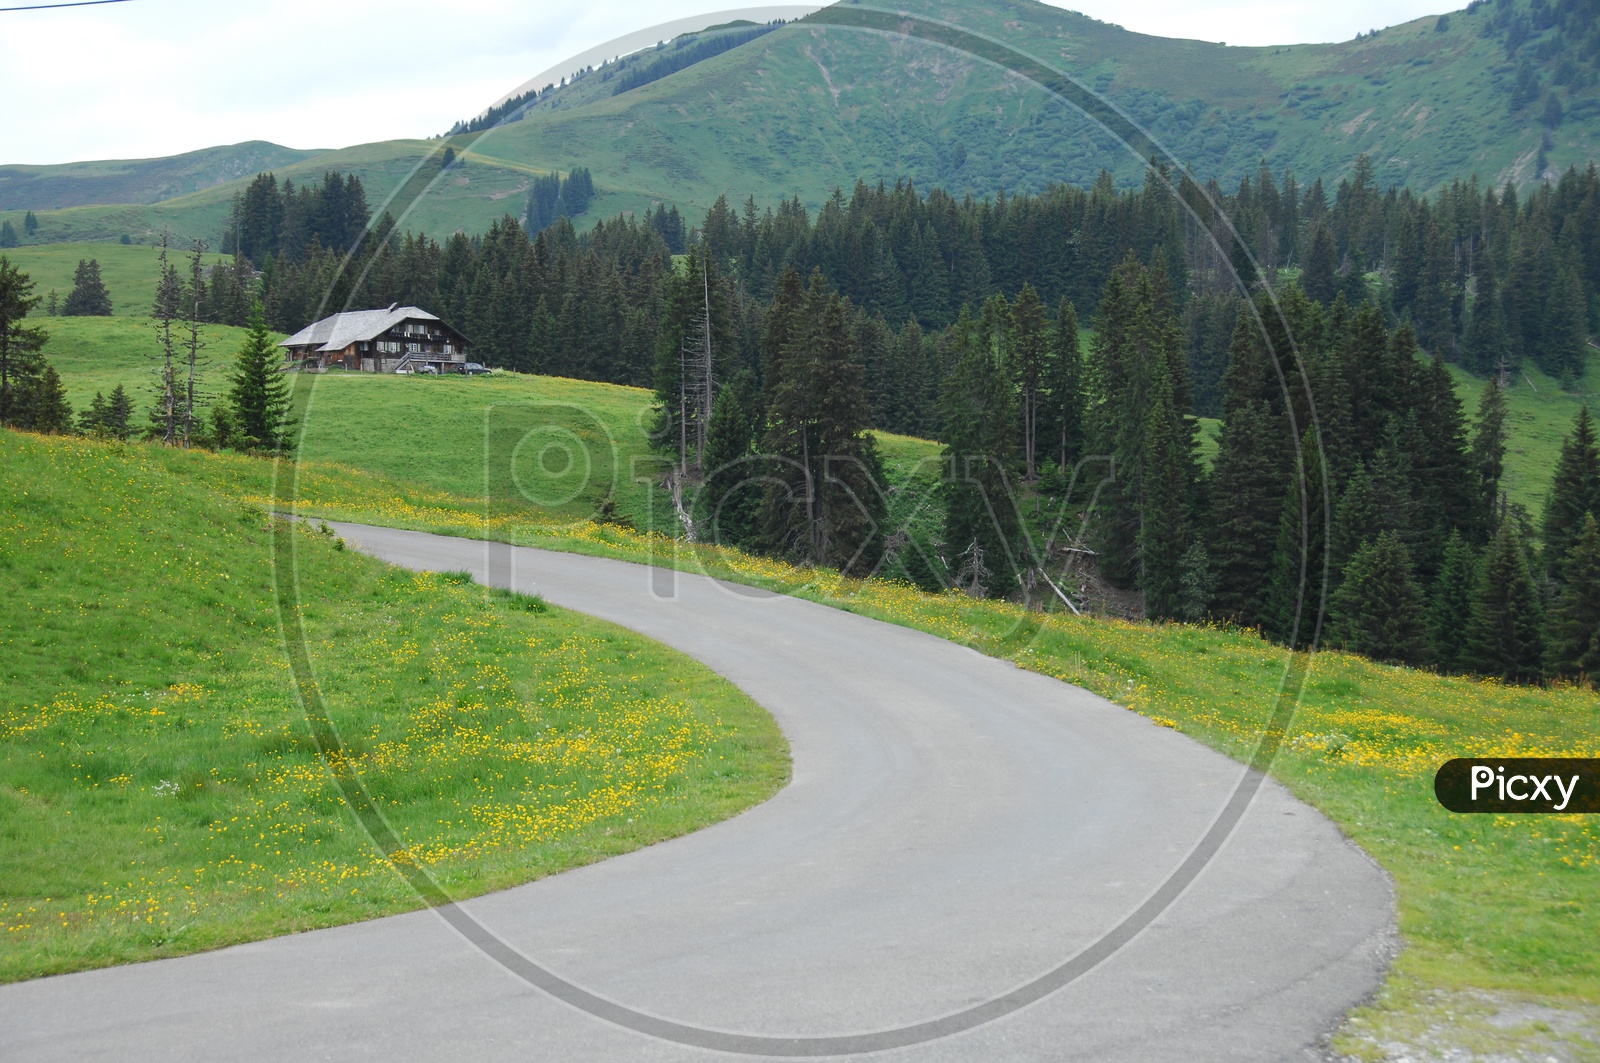 Road curve alongside the green meadow